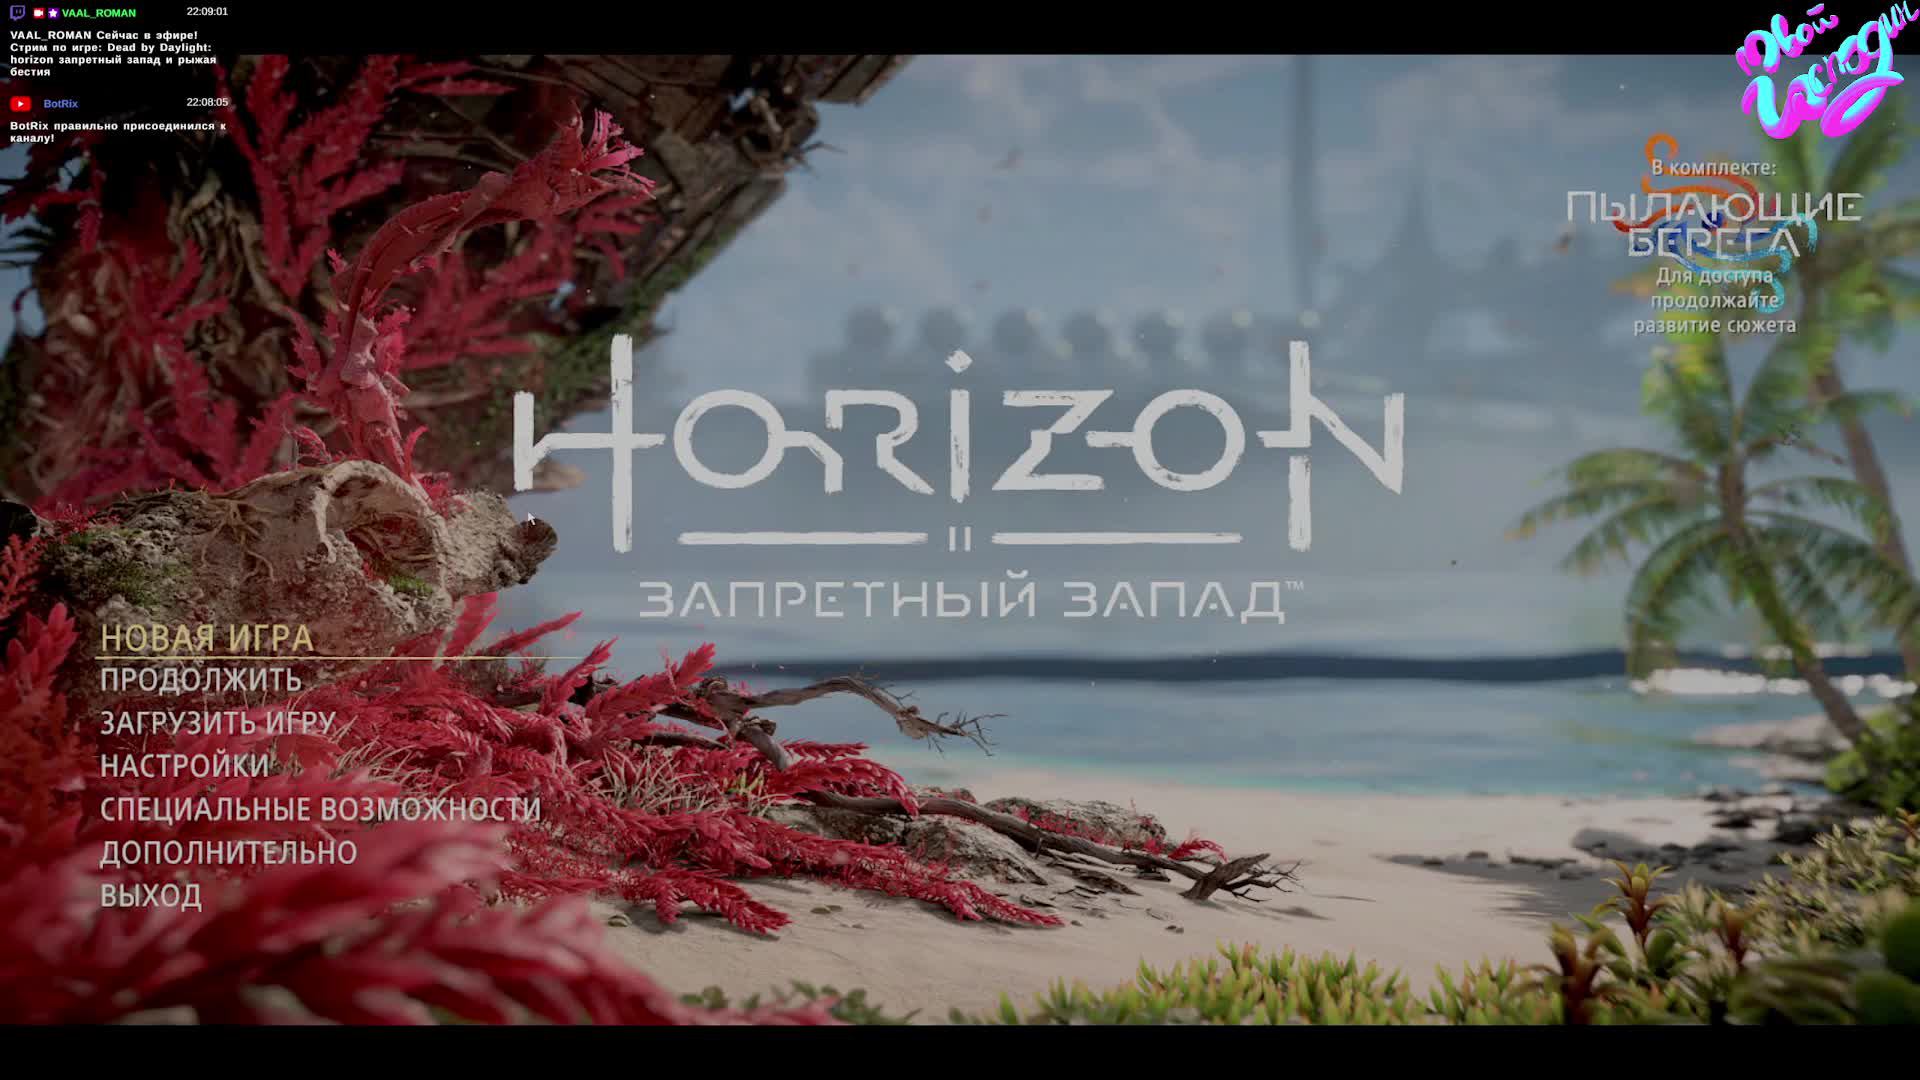 Horaizon - Горизонт: Запретный Запад